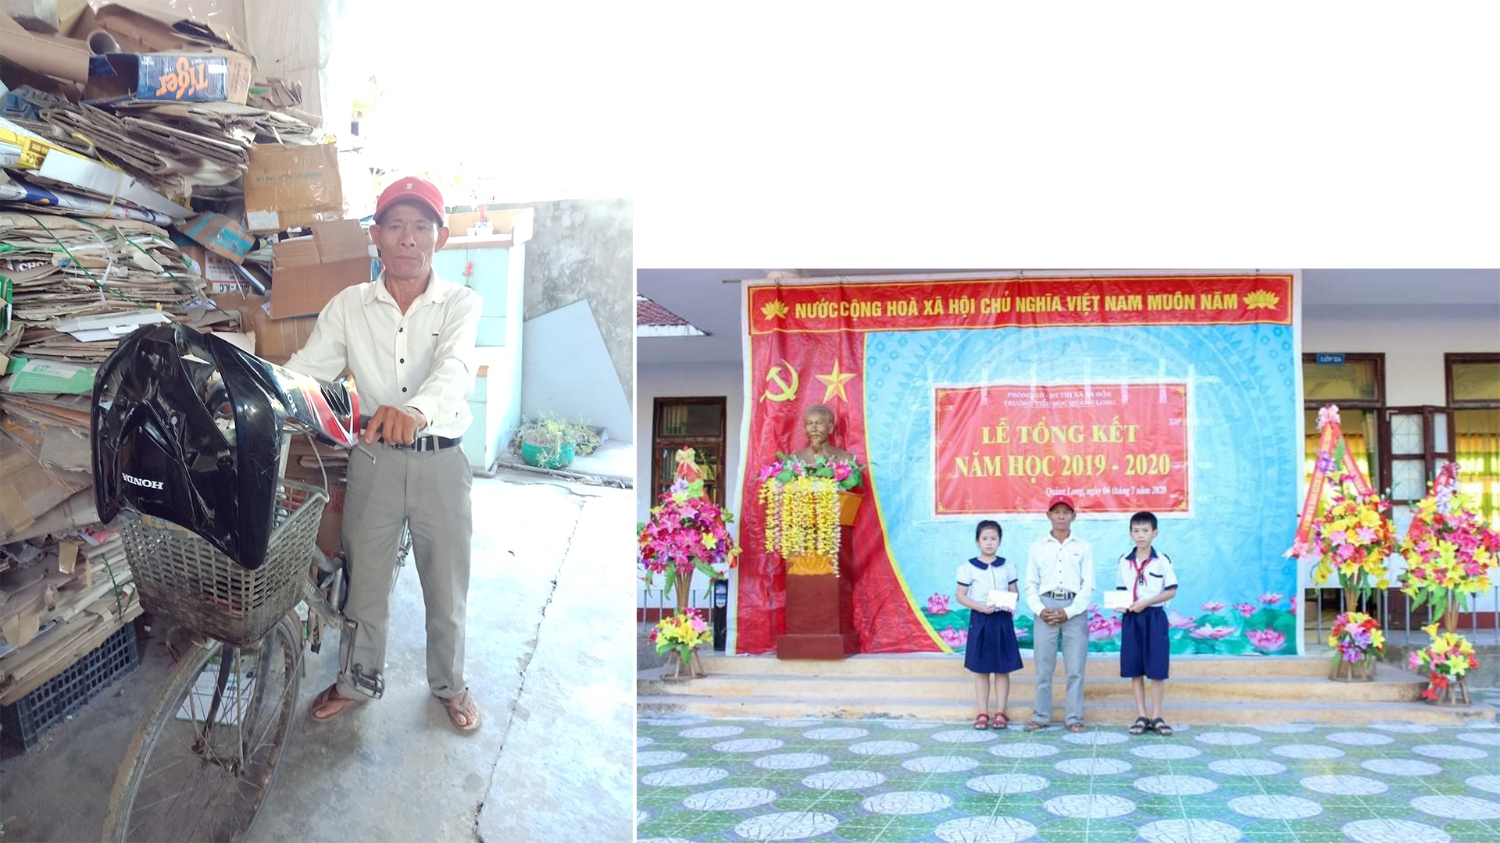 Ông Trần Huy Hoàng bên chiếc xe đạp làm nghề và trao thưởng cho học sinh nghèo